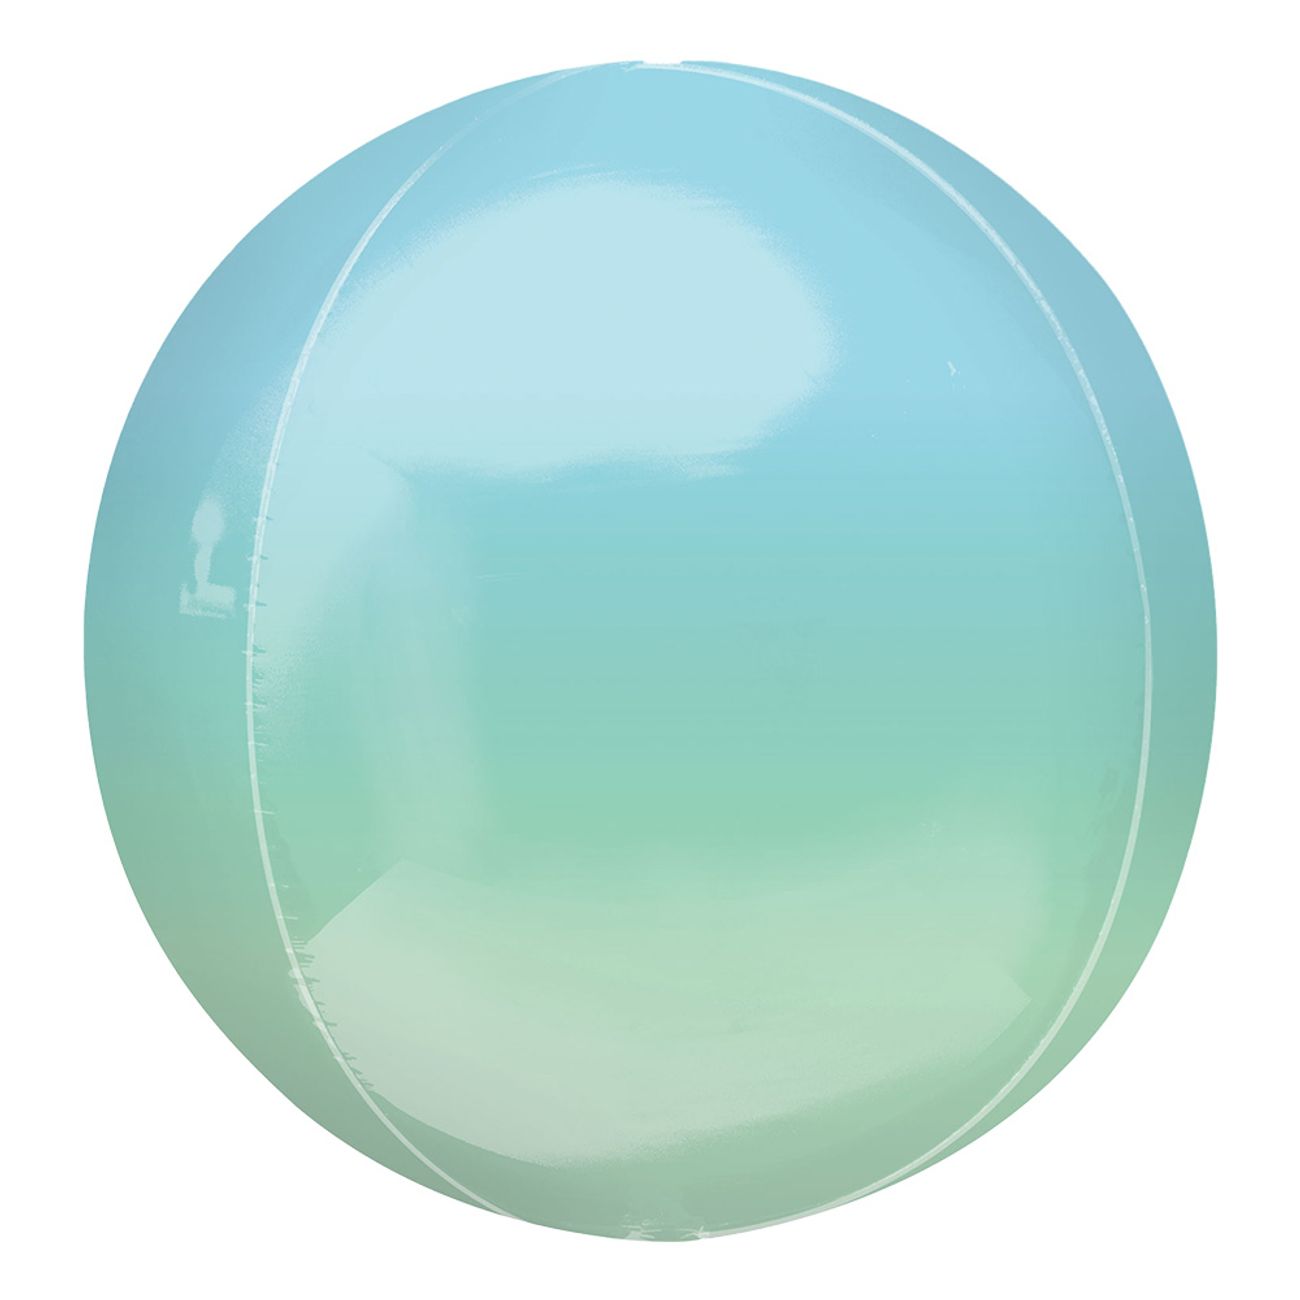 folieballong-orbz-ombre-bla-gron-102356-1